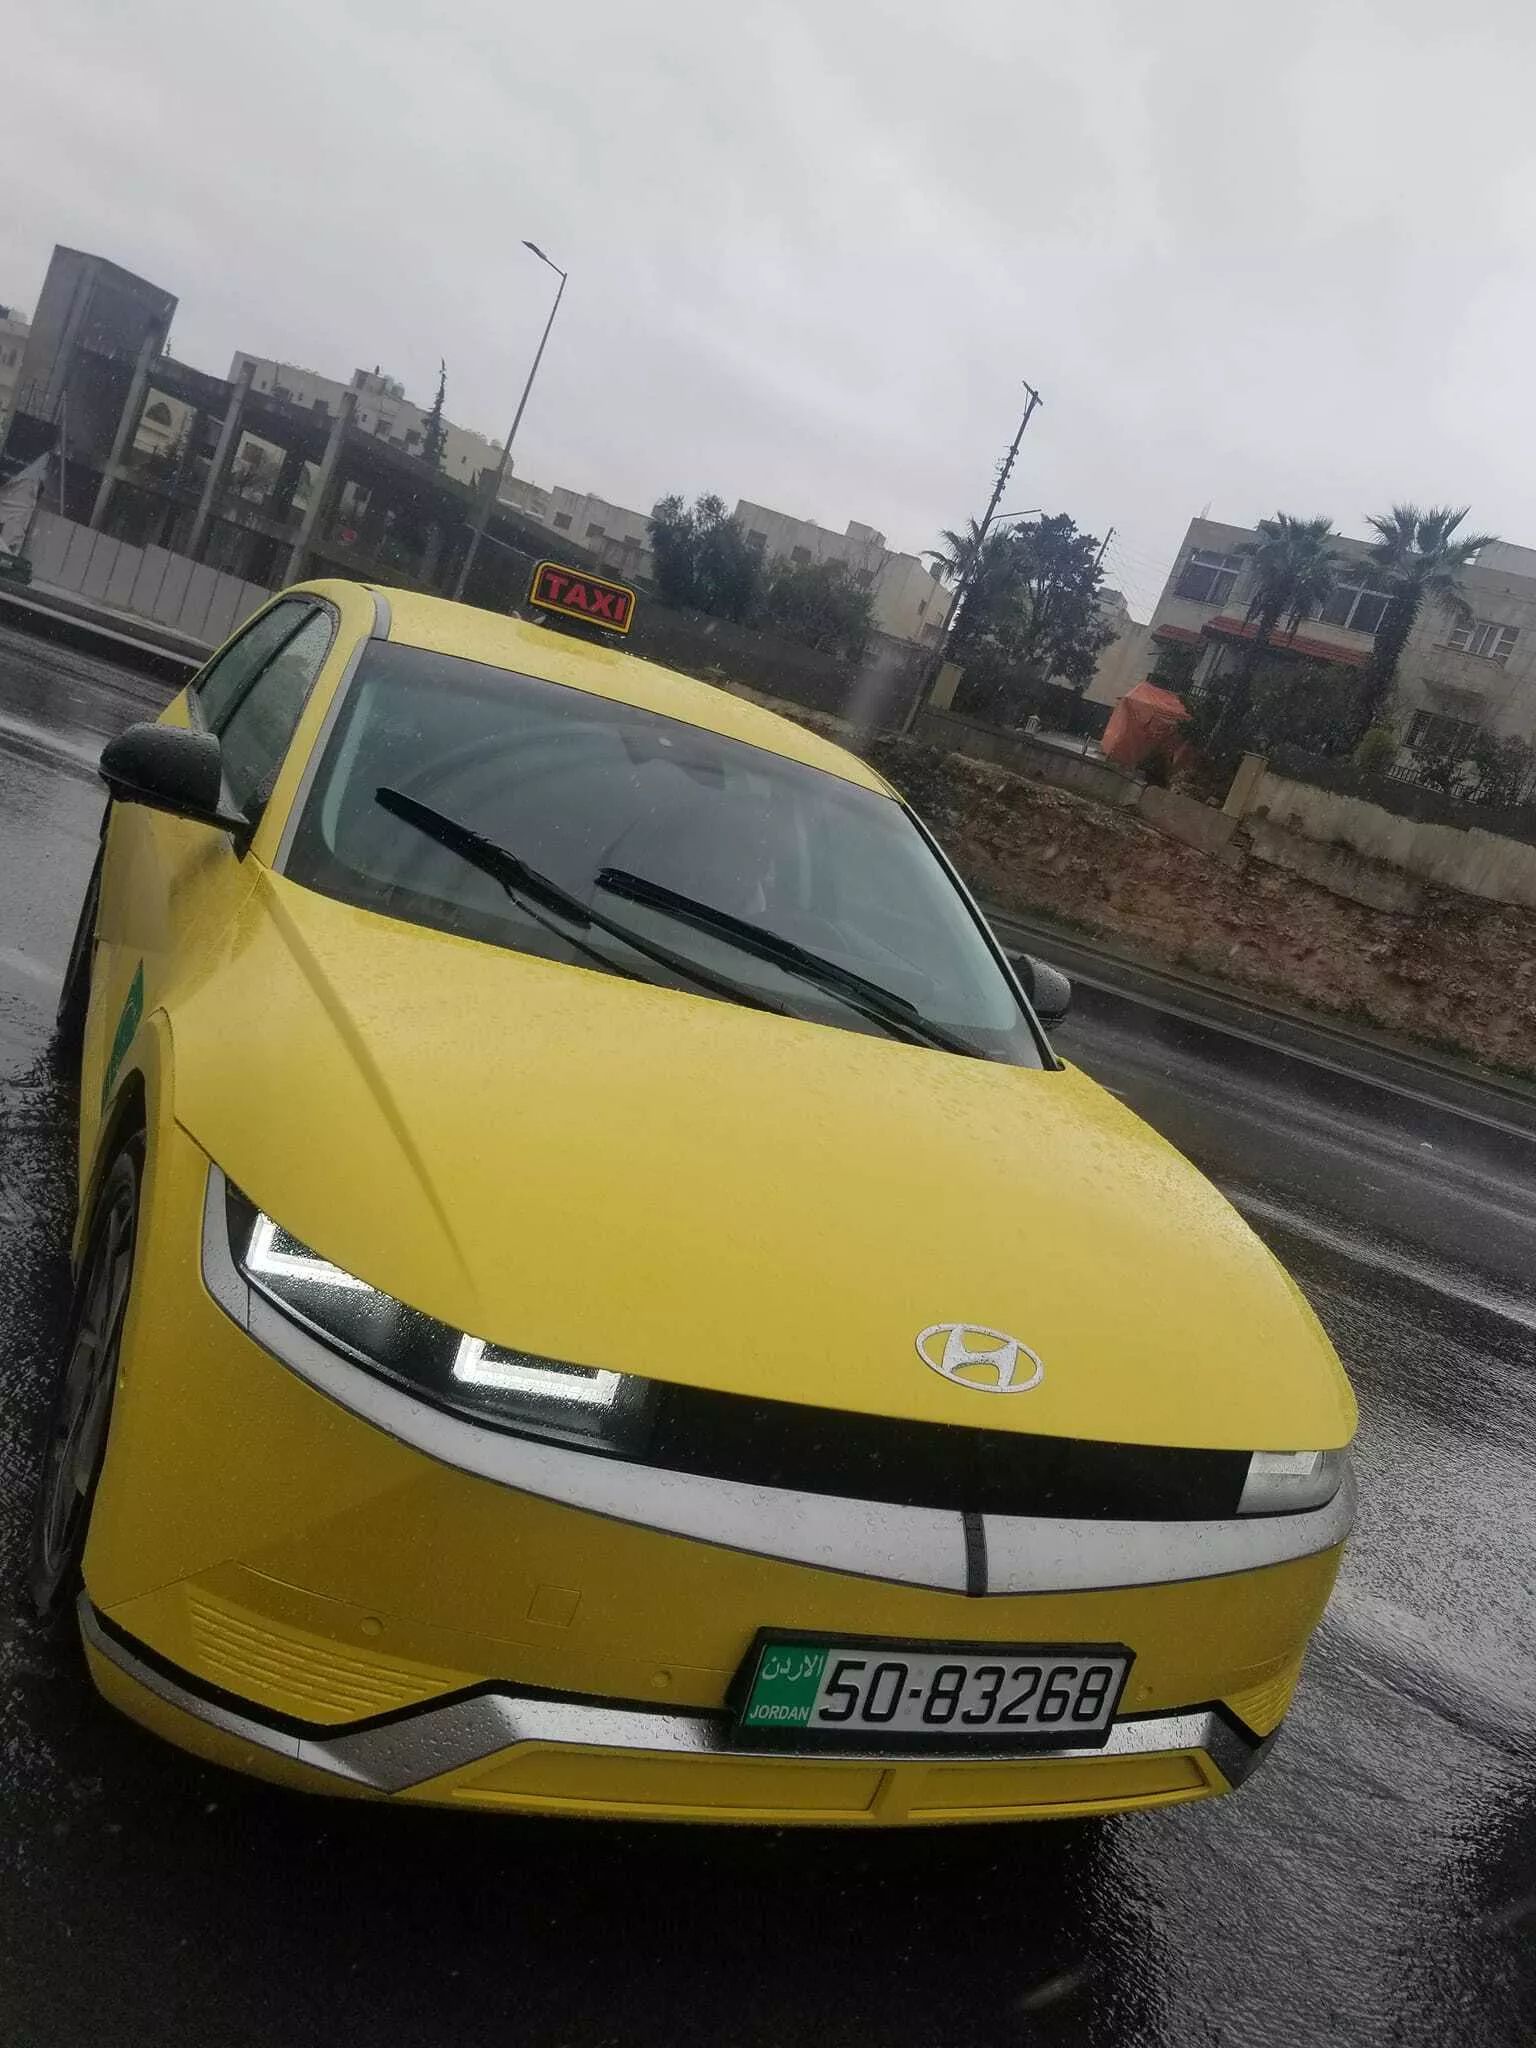 هيونداي ايونيك 5 الكهربائية الجديدة تعمل كسيارة أجرة في شوارع الأردن 5